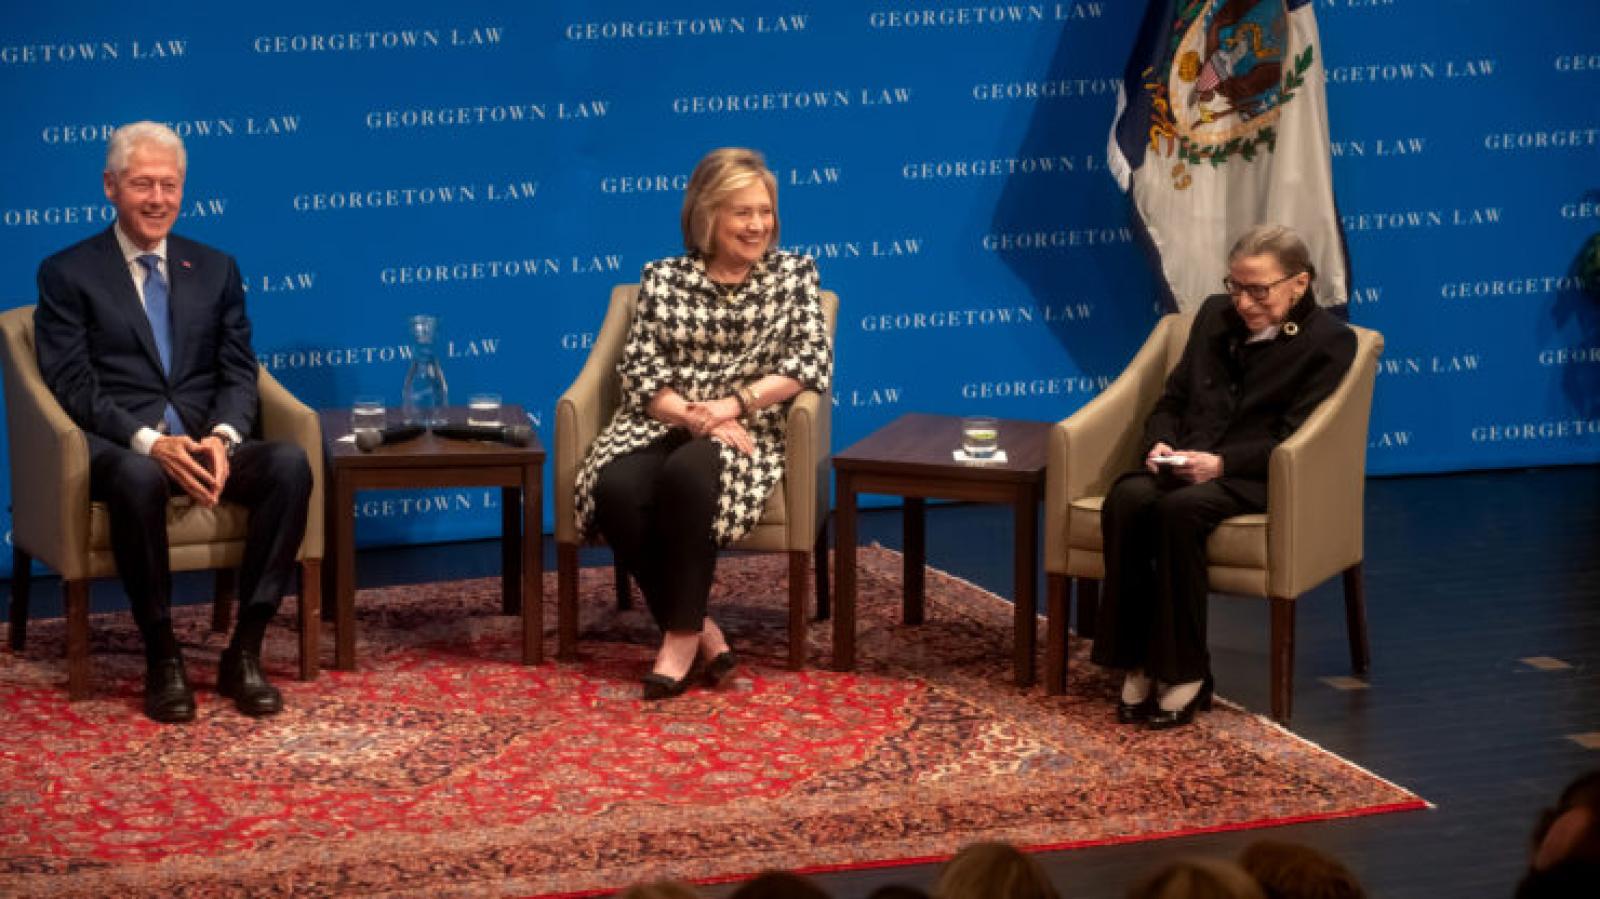 Bill clinton, Hillary Clinton and Ruth Bader Ginsburg